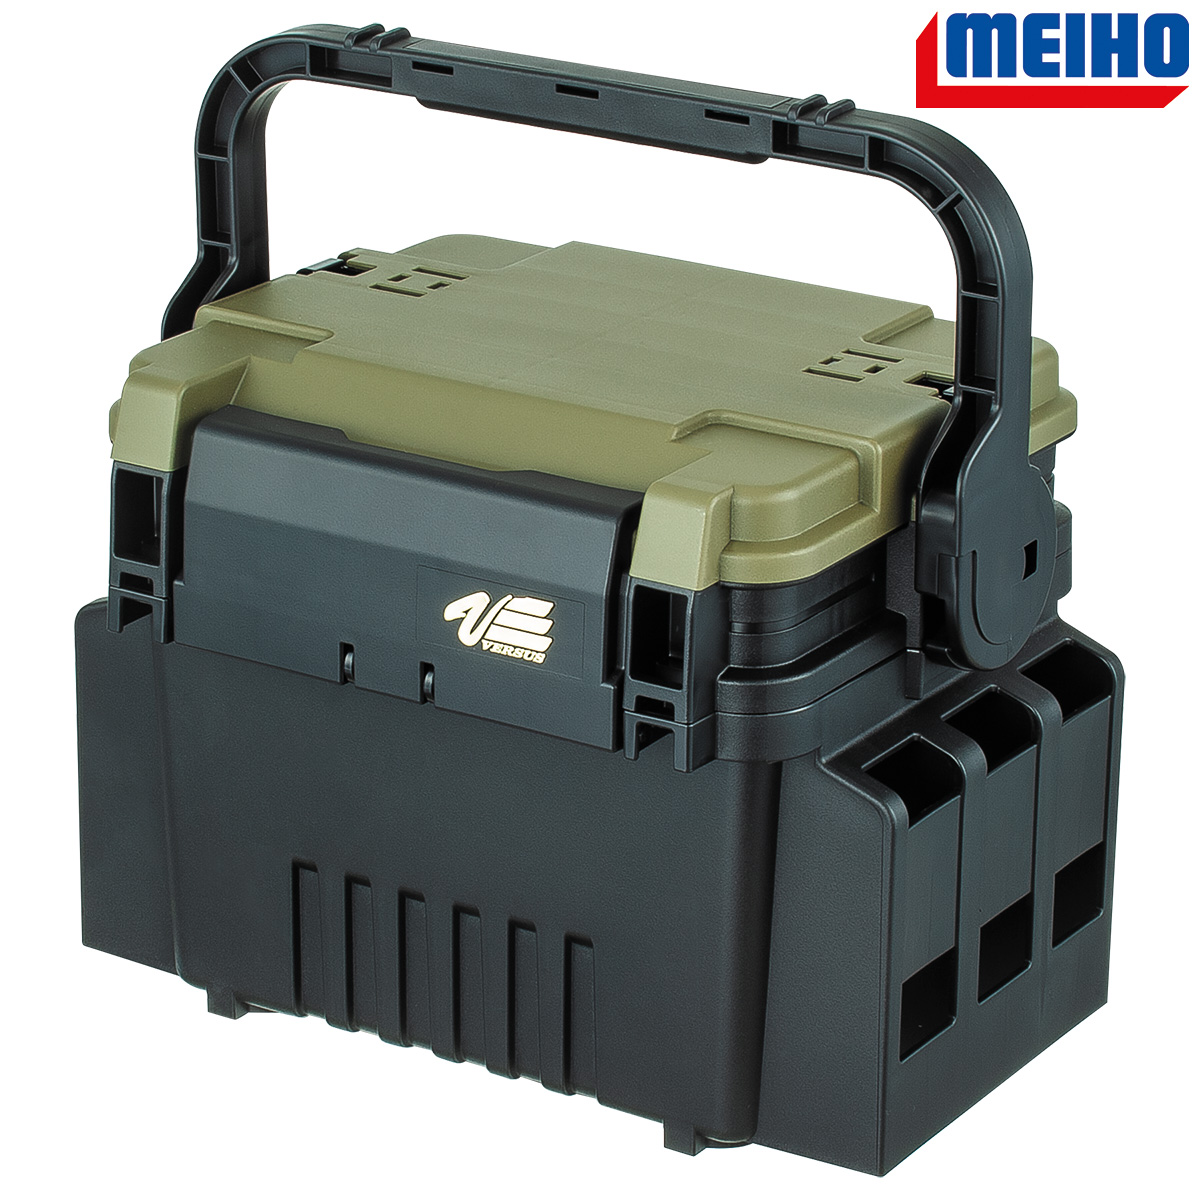 MEIHO Versus VS-7055 N mit Handle Stopper